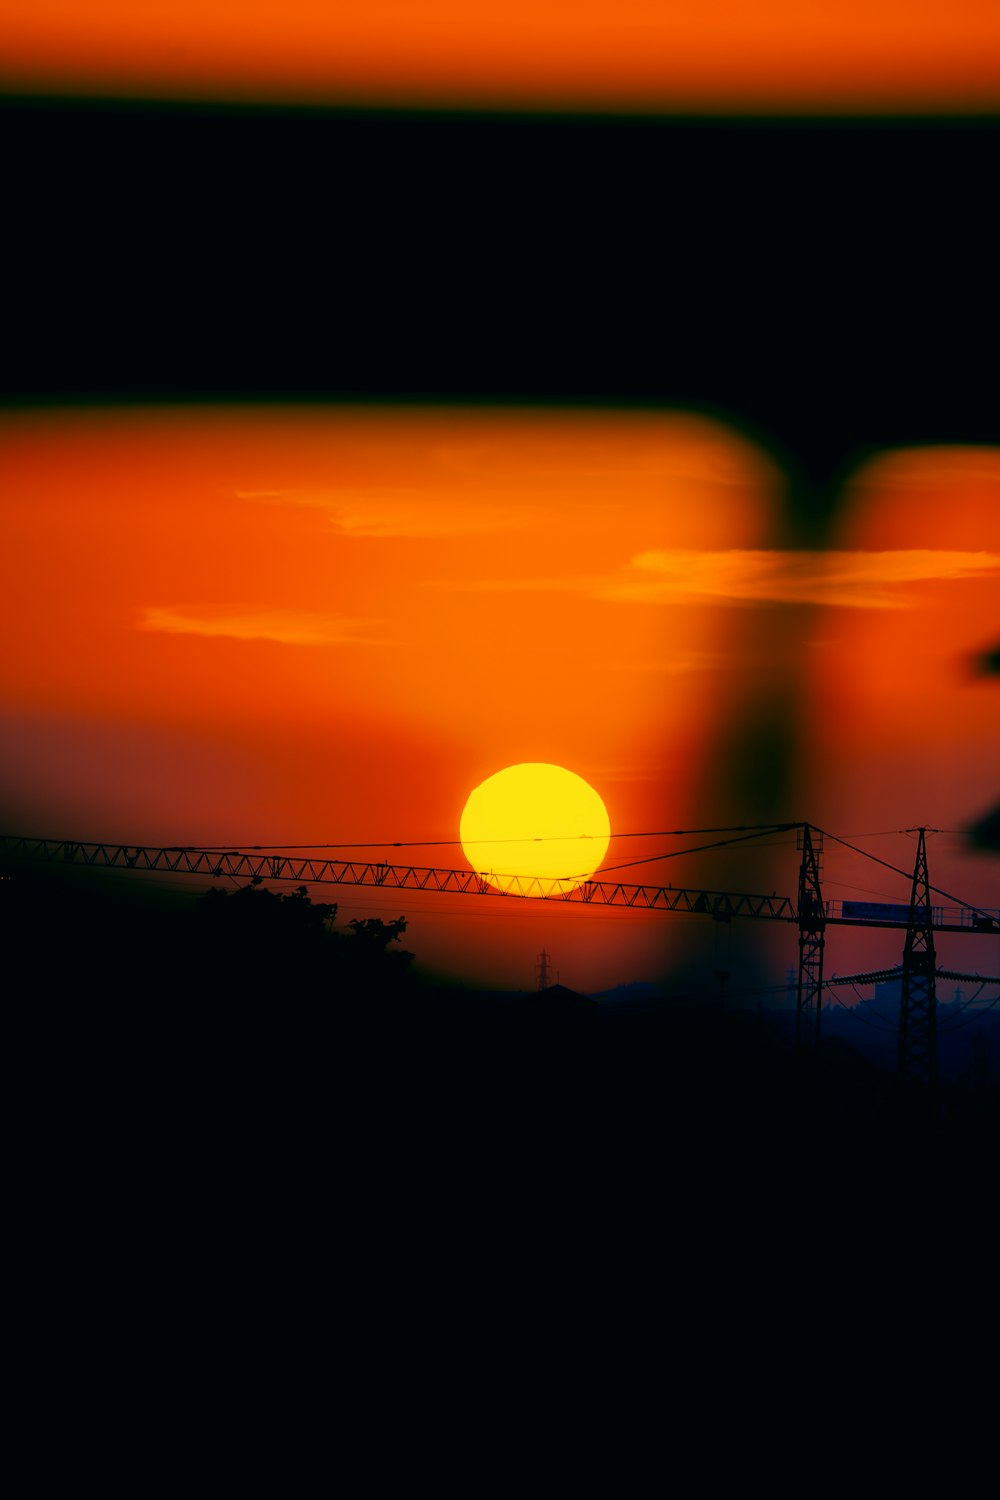 Il sole sta tramontando su una linea elettrica